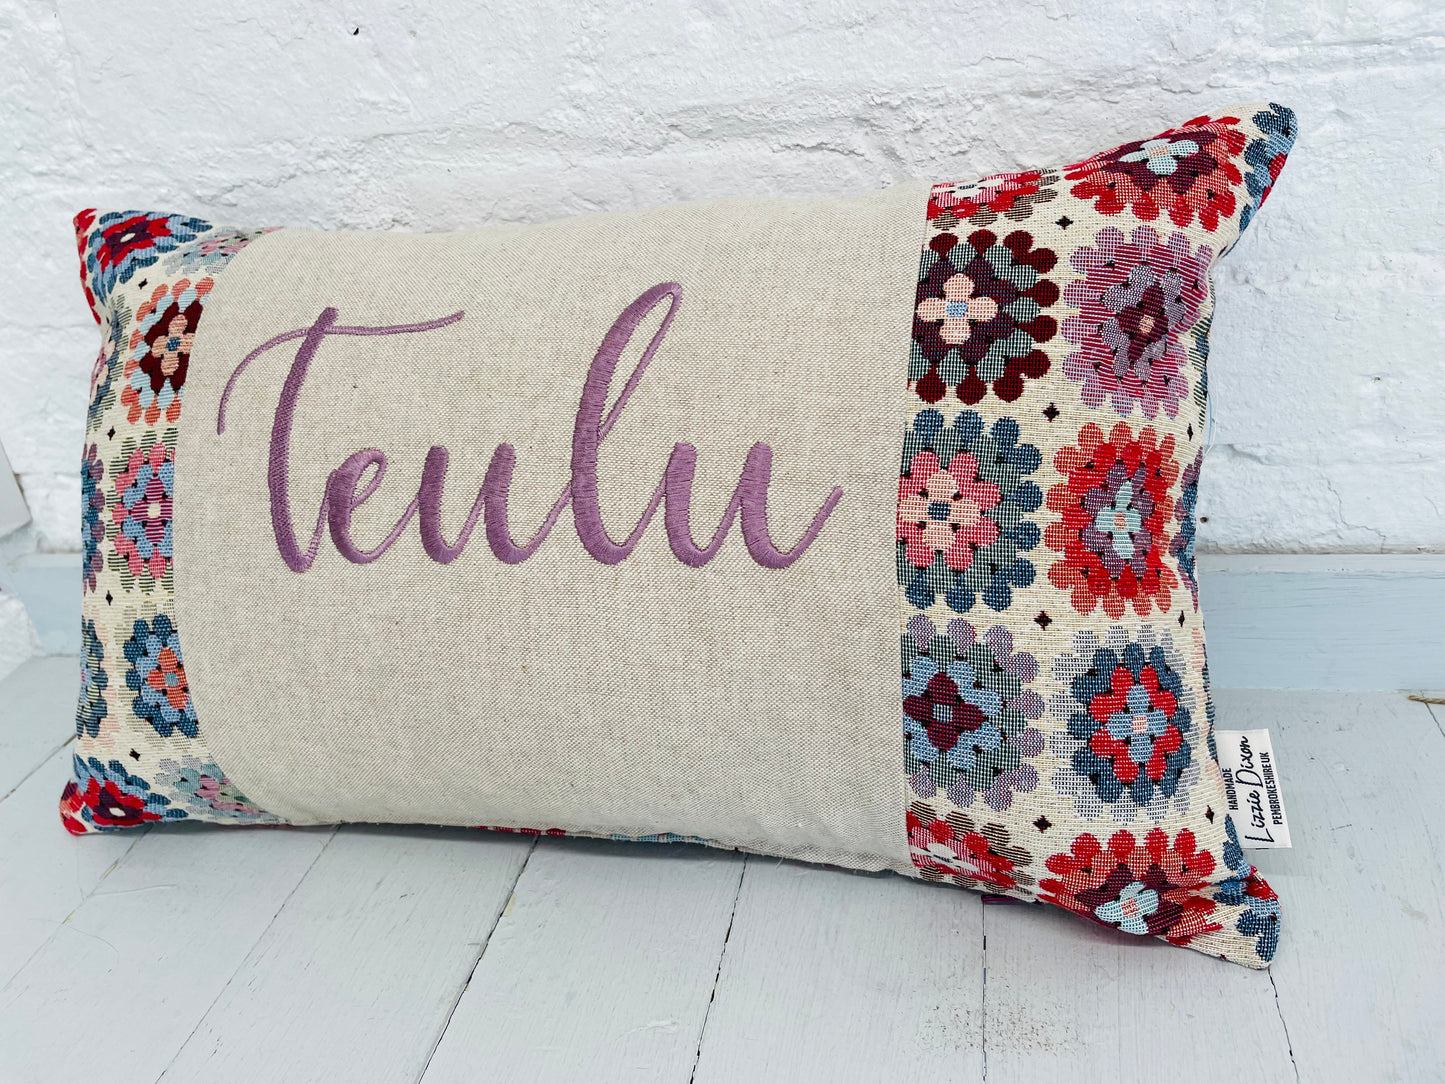 Teulu Crochet style Cushion- Teulu Cushion